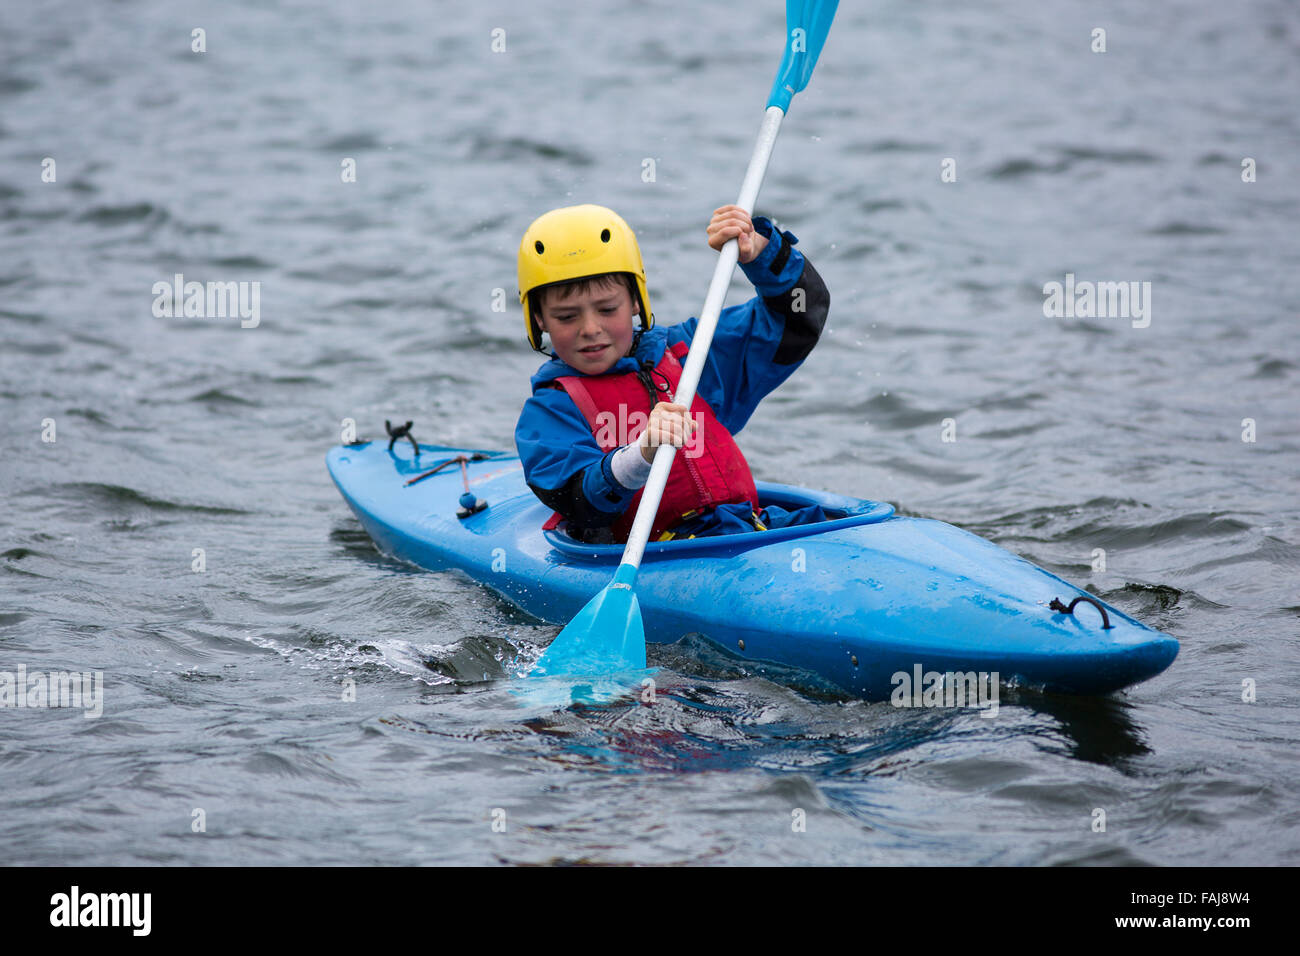 Chico palas en Kayak en el lago Foto de stock